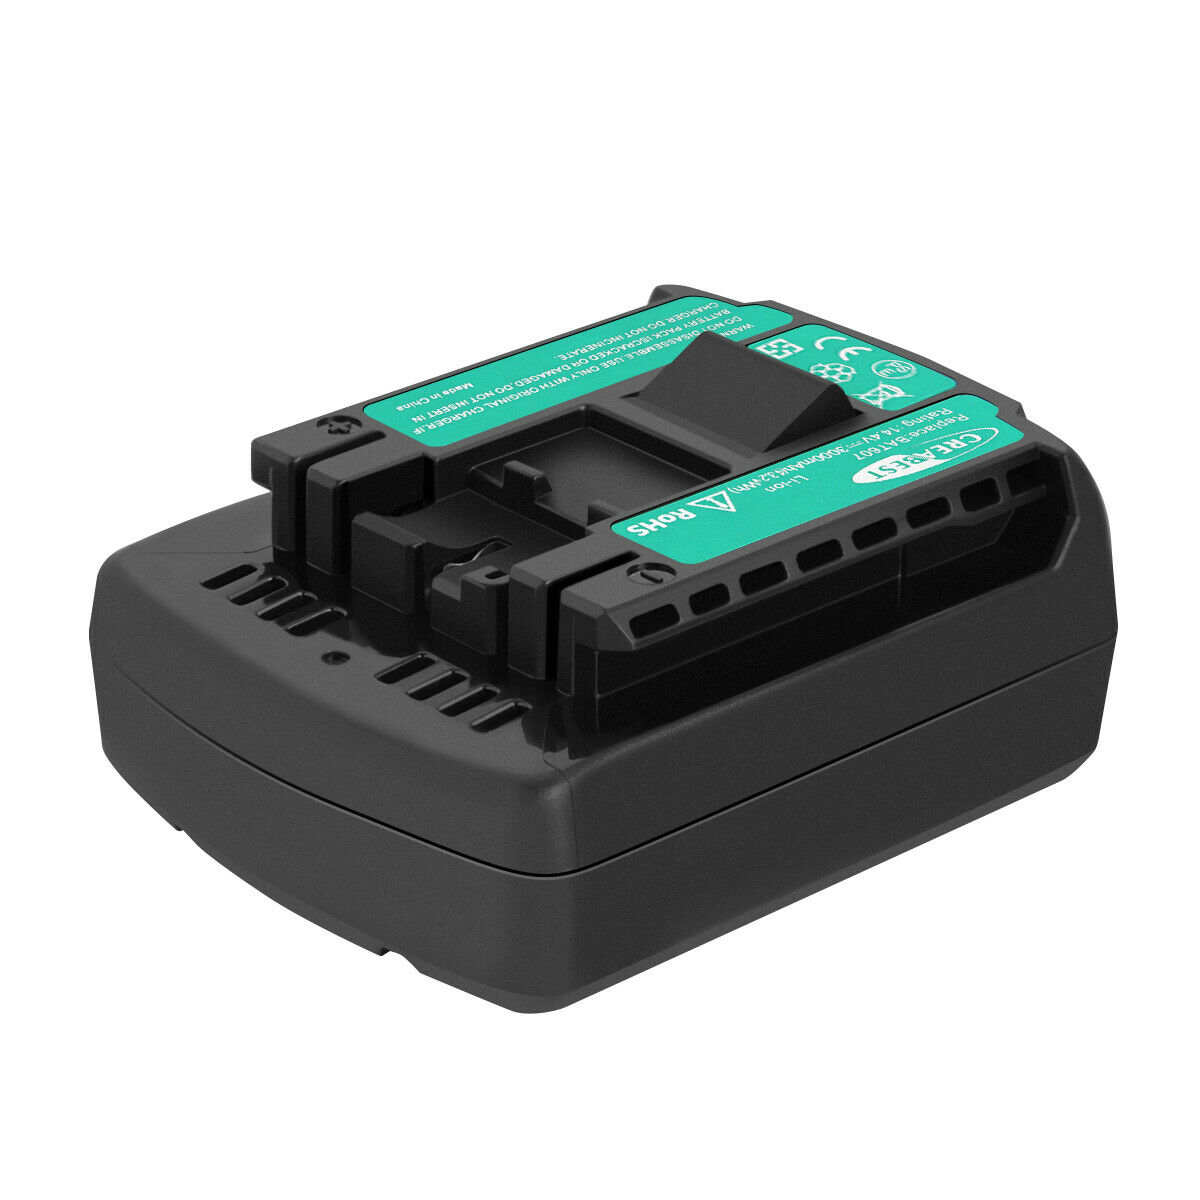 BOSCH GSR 1440-LI, HDB180-02, PB360S, TSR 1080-LI compatibile Batteria